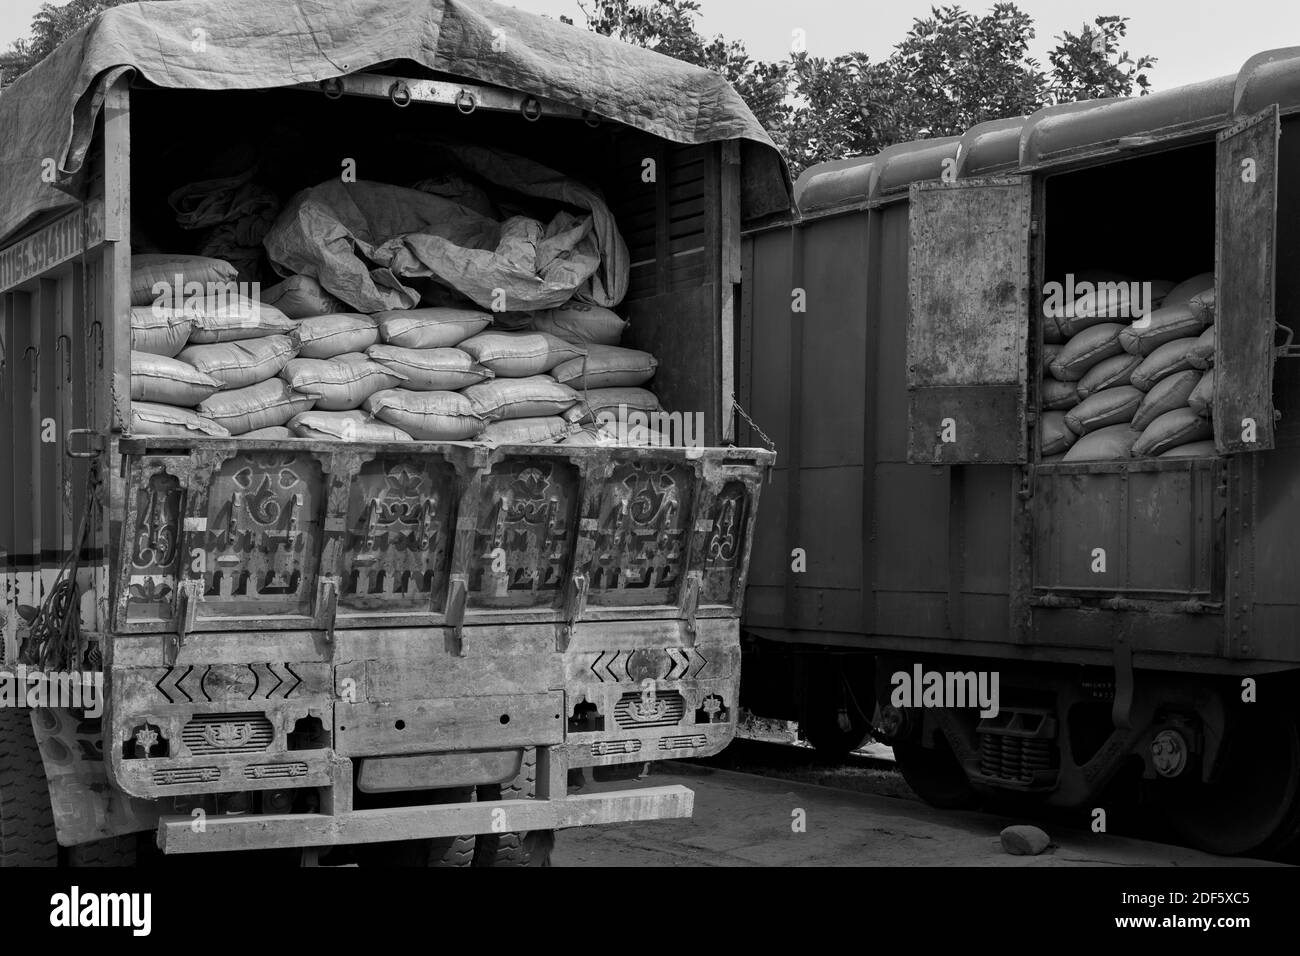 Sacs de ciment chargés manuellement du train au camion en attente de distribution ultérieure à Mathura, Uttar Pradesh, Inde. Banque D'Images